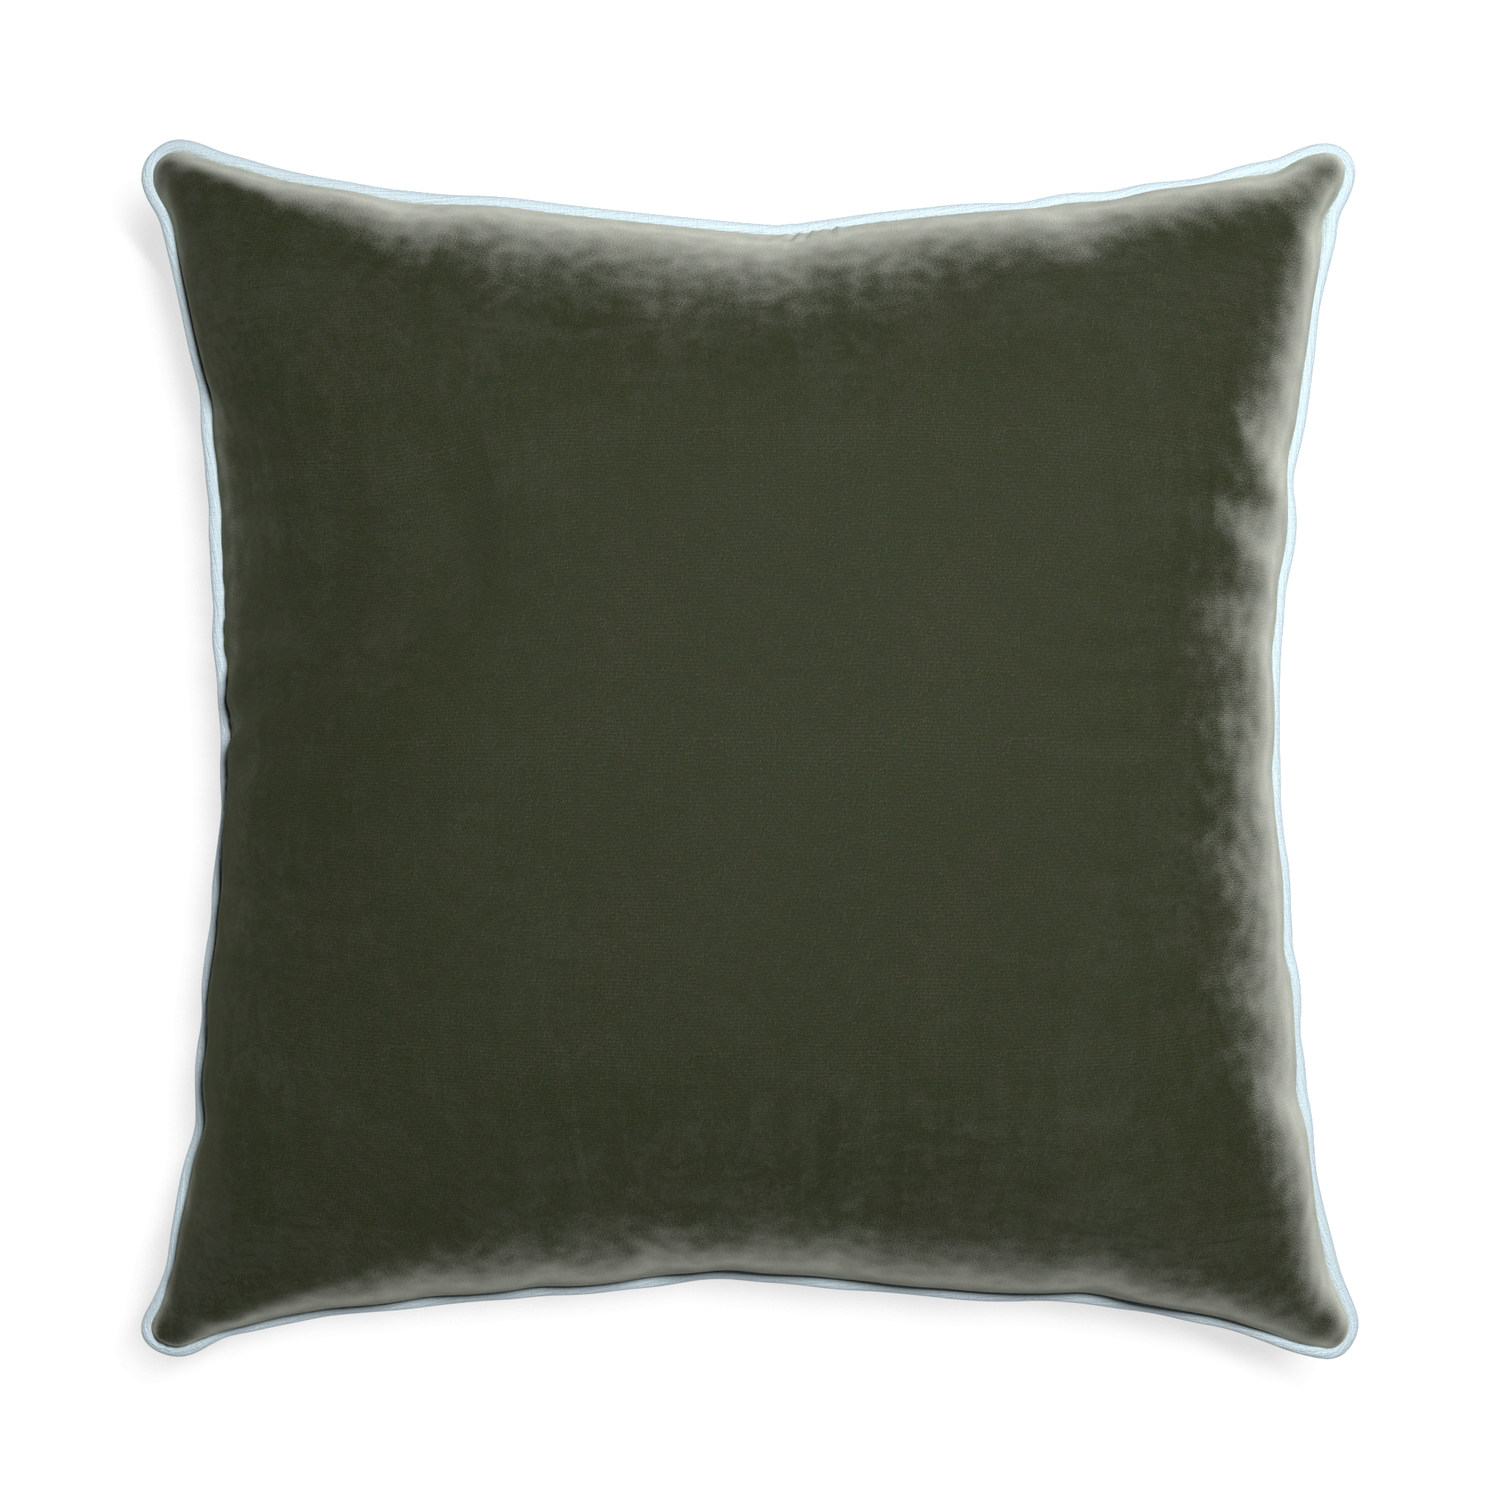 Euro-sham fern velvet custom pillow with powder piping on white background